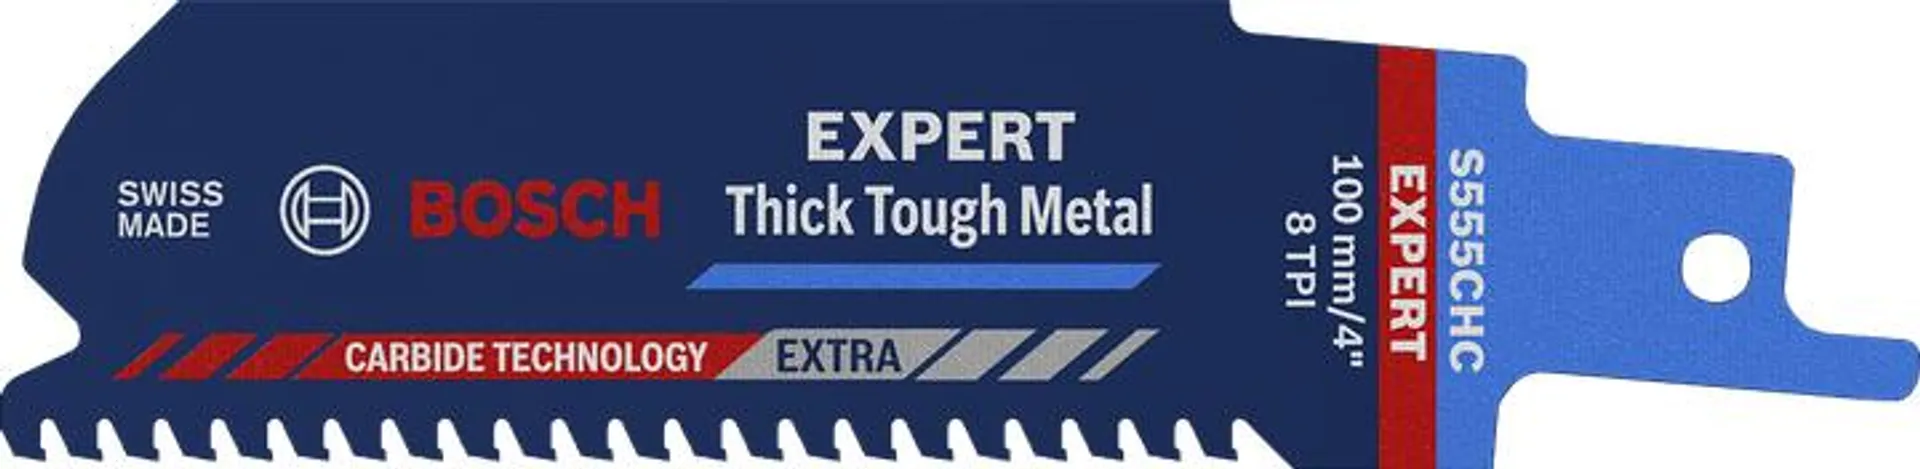 EXPERT Thick Tough Metal S555CHC Blätter